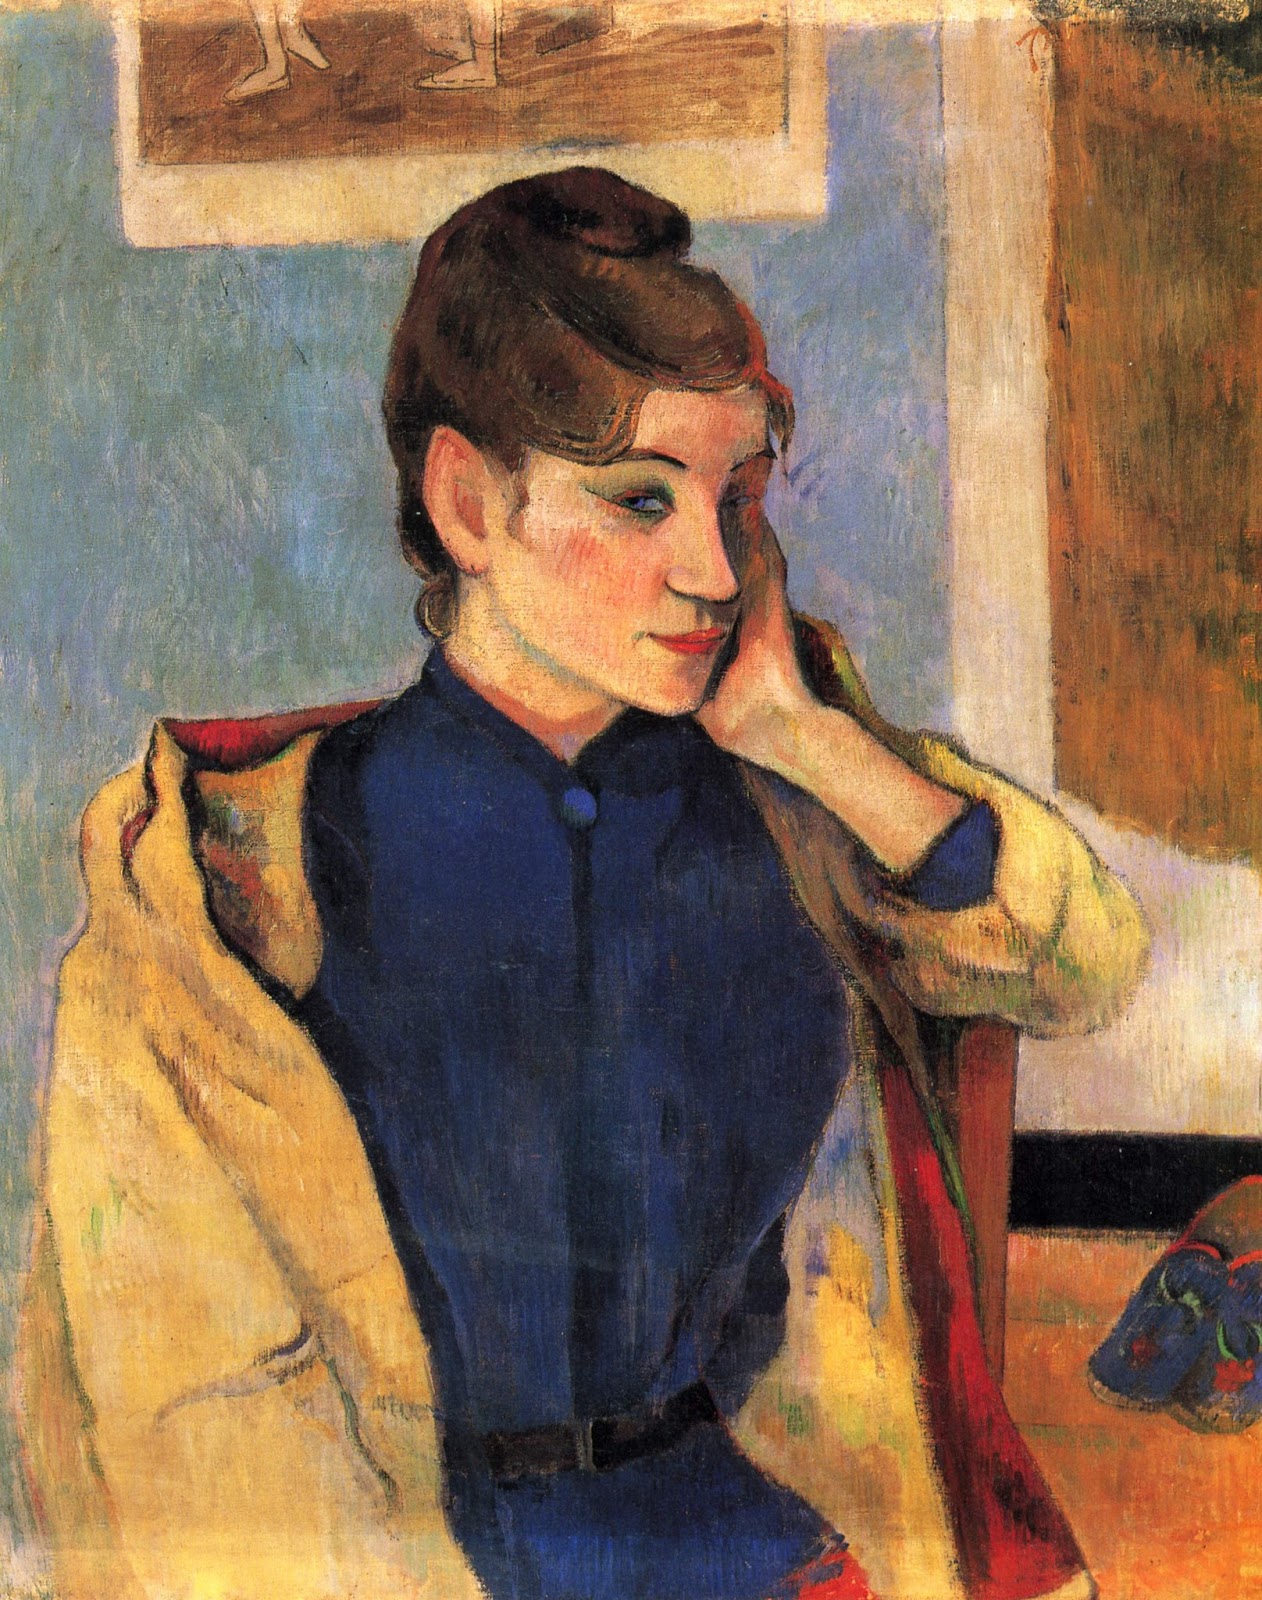 Paul+Gauguin-1848-1903 (400).jpg